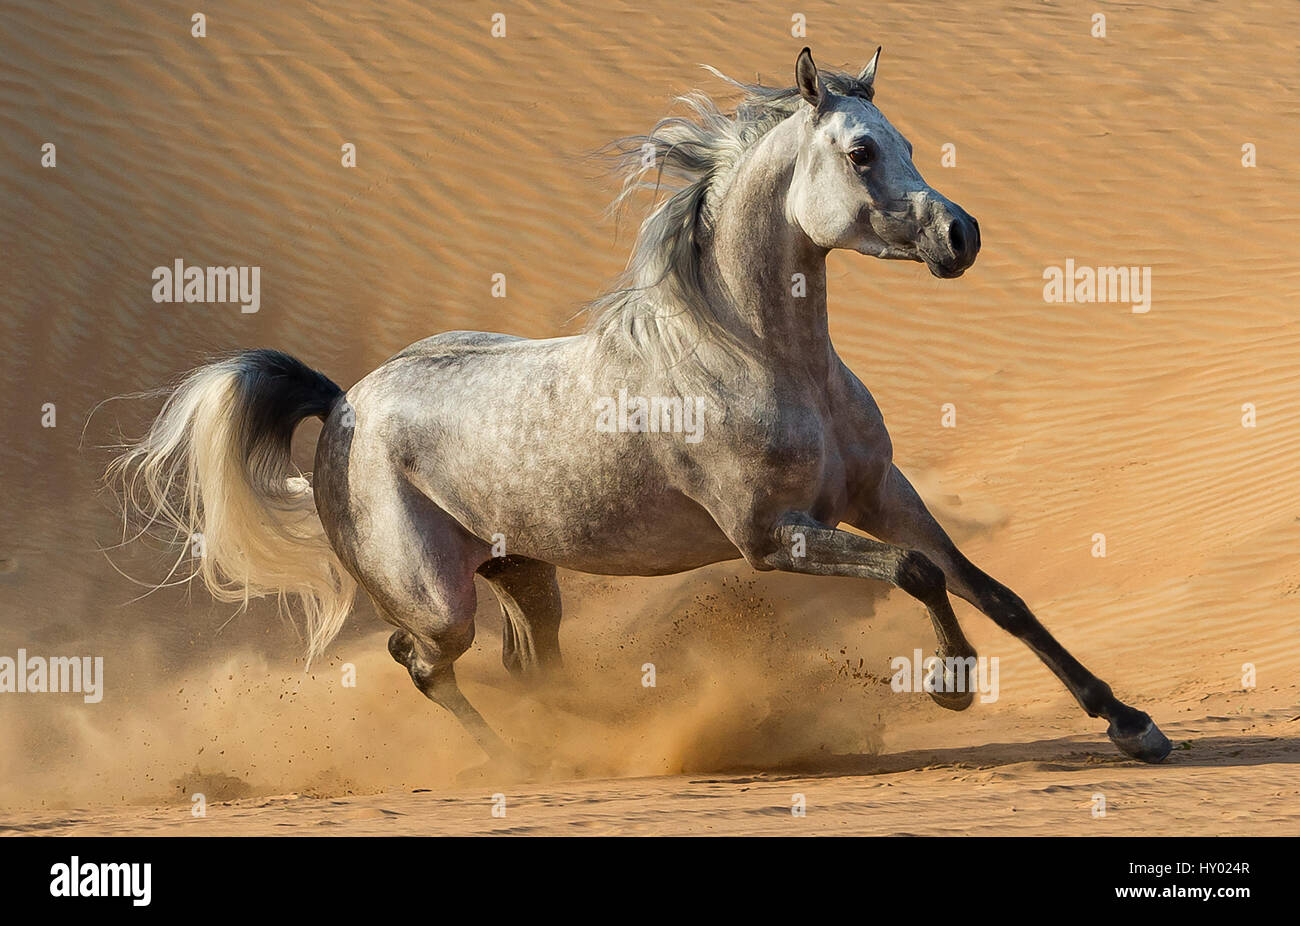 Colline punteggiano grigio stallone arabo in esecuzione in dune del deserto vicino a Dubai, Emirati Arabi Uniti. Foto Stock